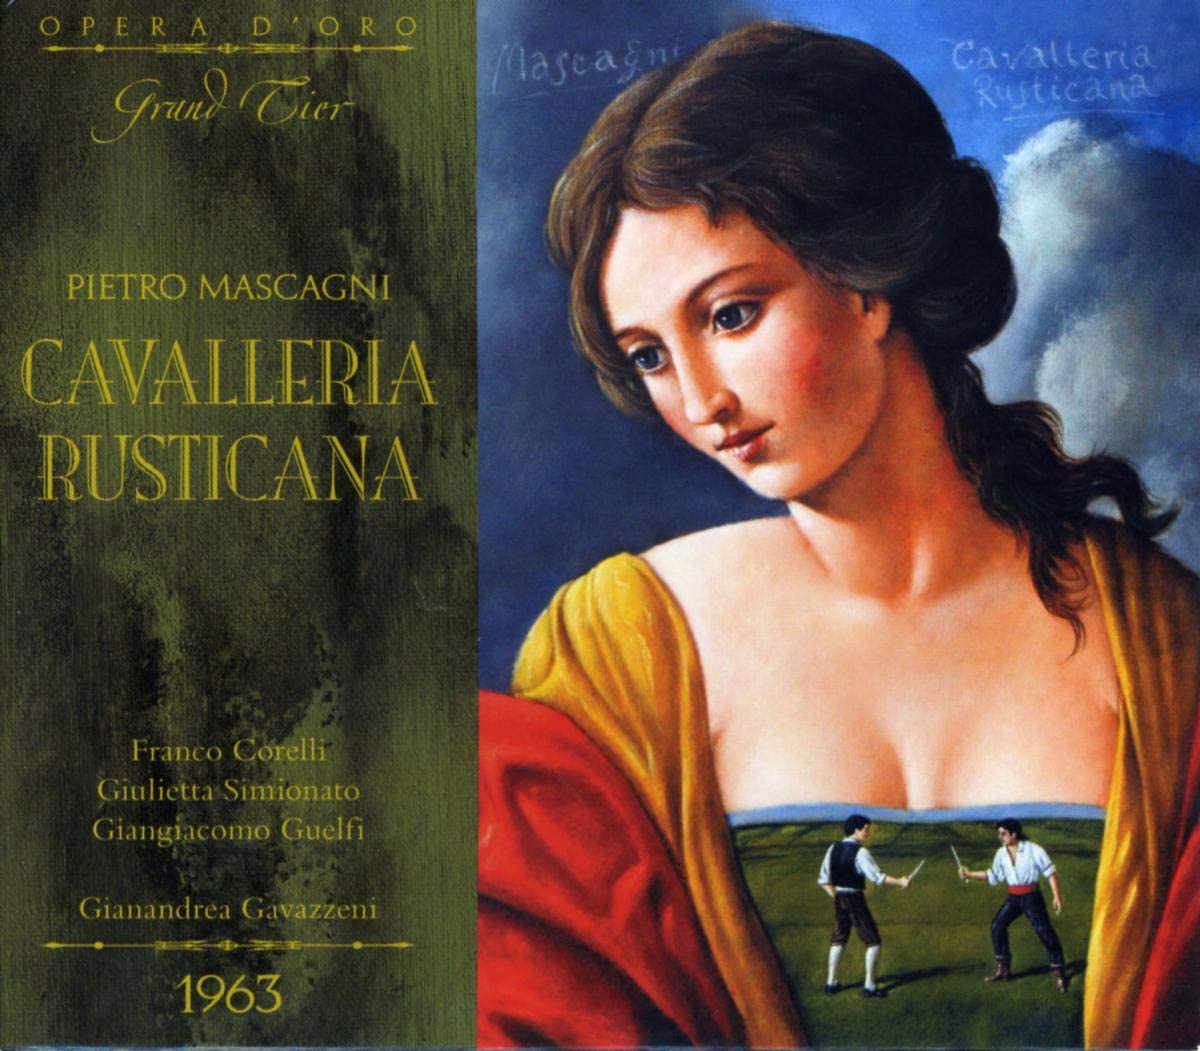 Pietro Mascagni: Cavalleria Rusticana | Gianandrea Gavazzeni, Franco Corelli, Giulietta Simionato, Giangiacomo Guelfi